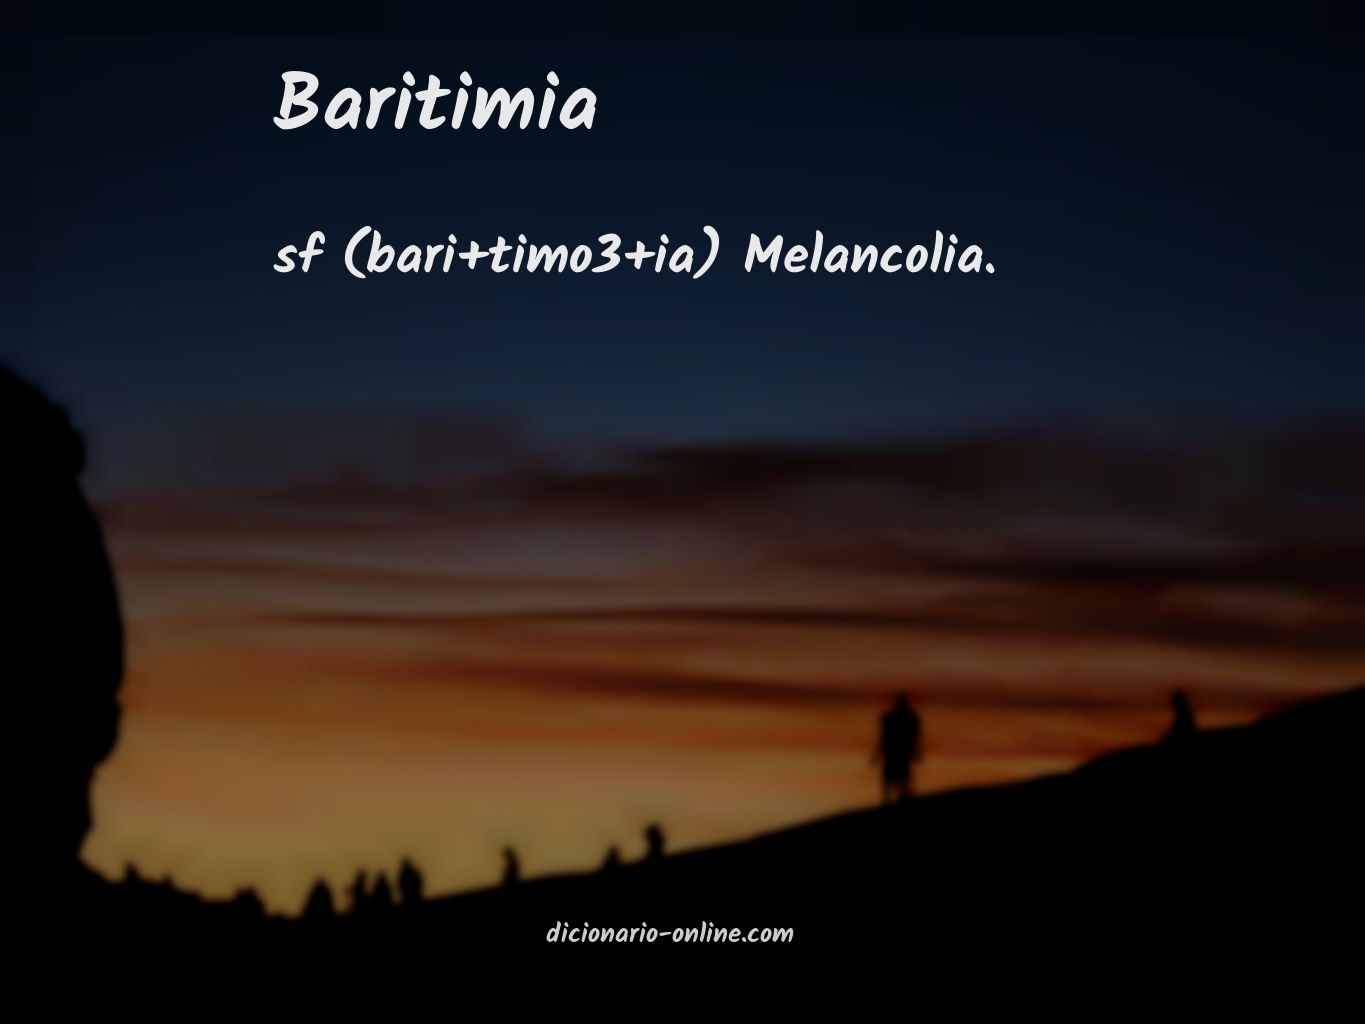 Significado de baritimia